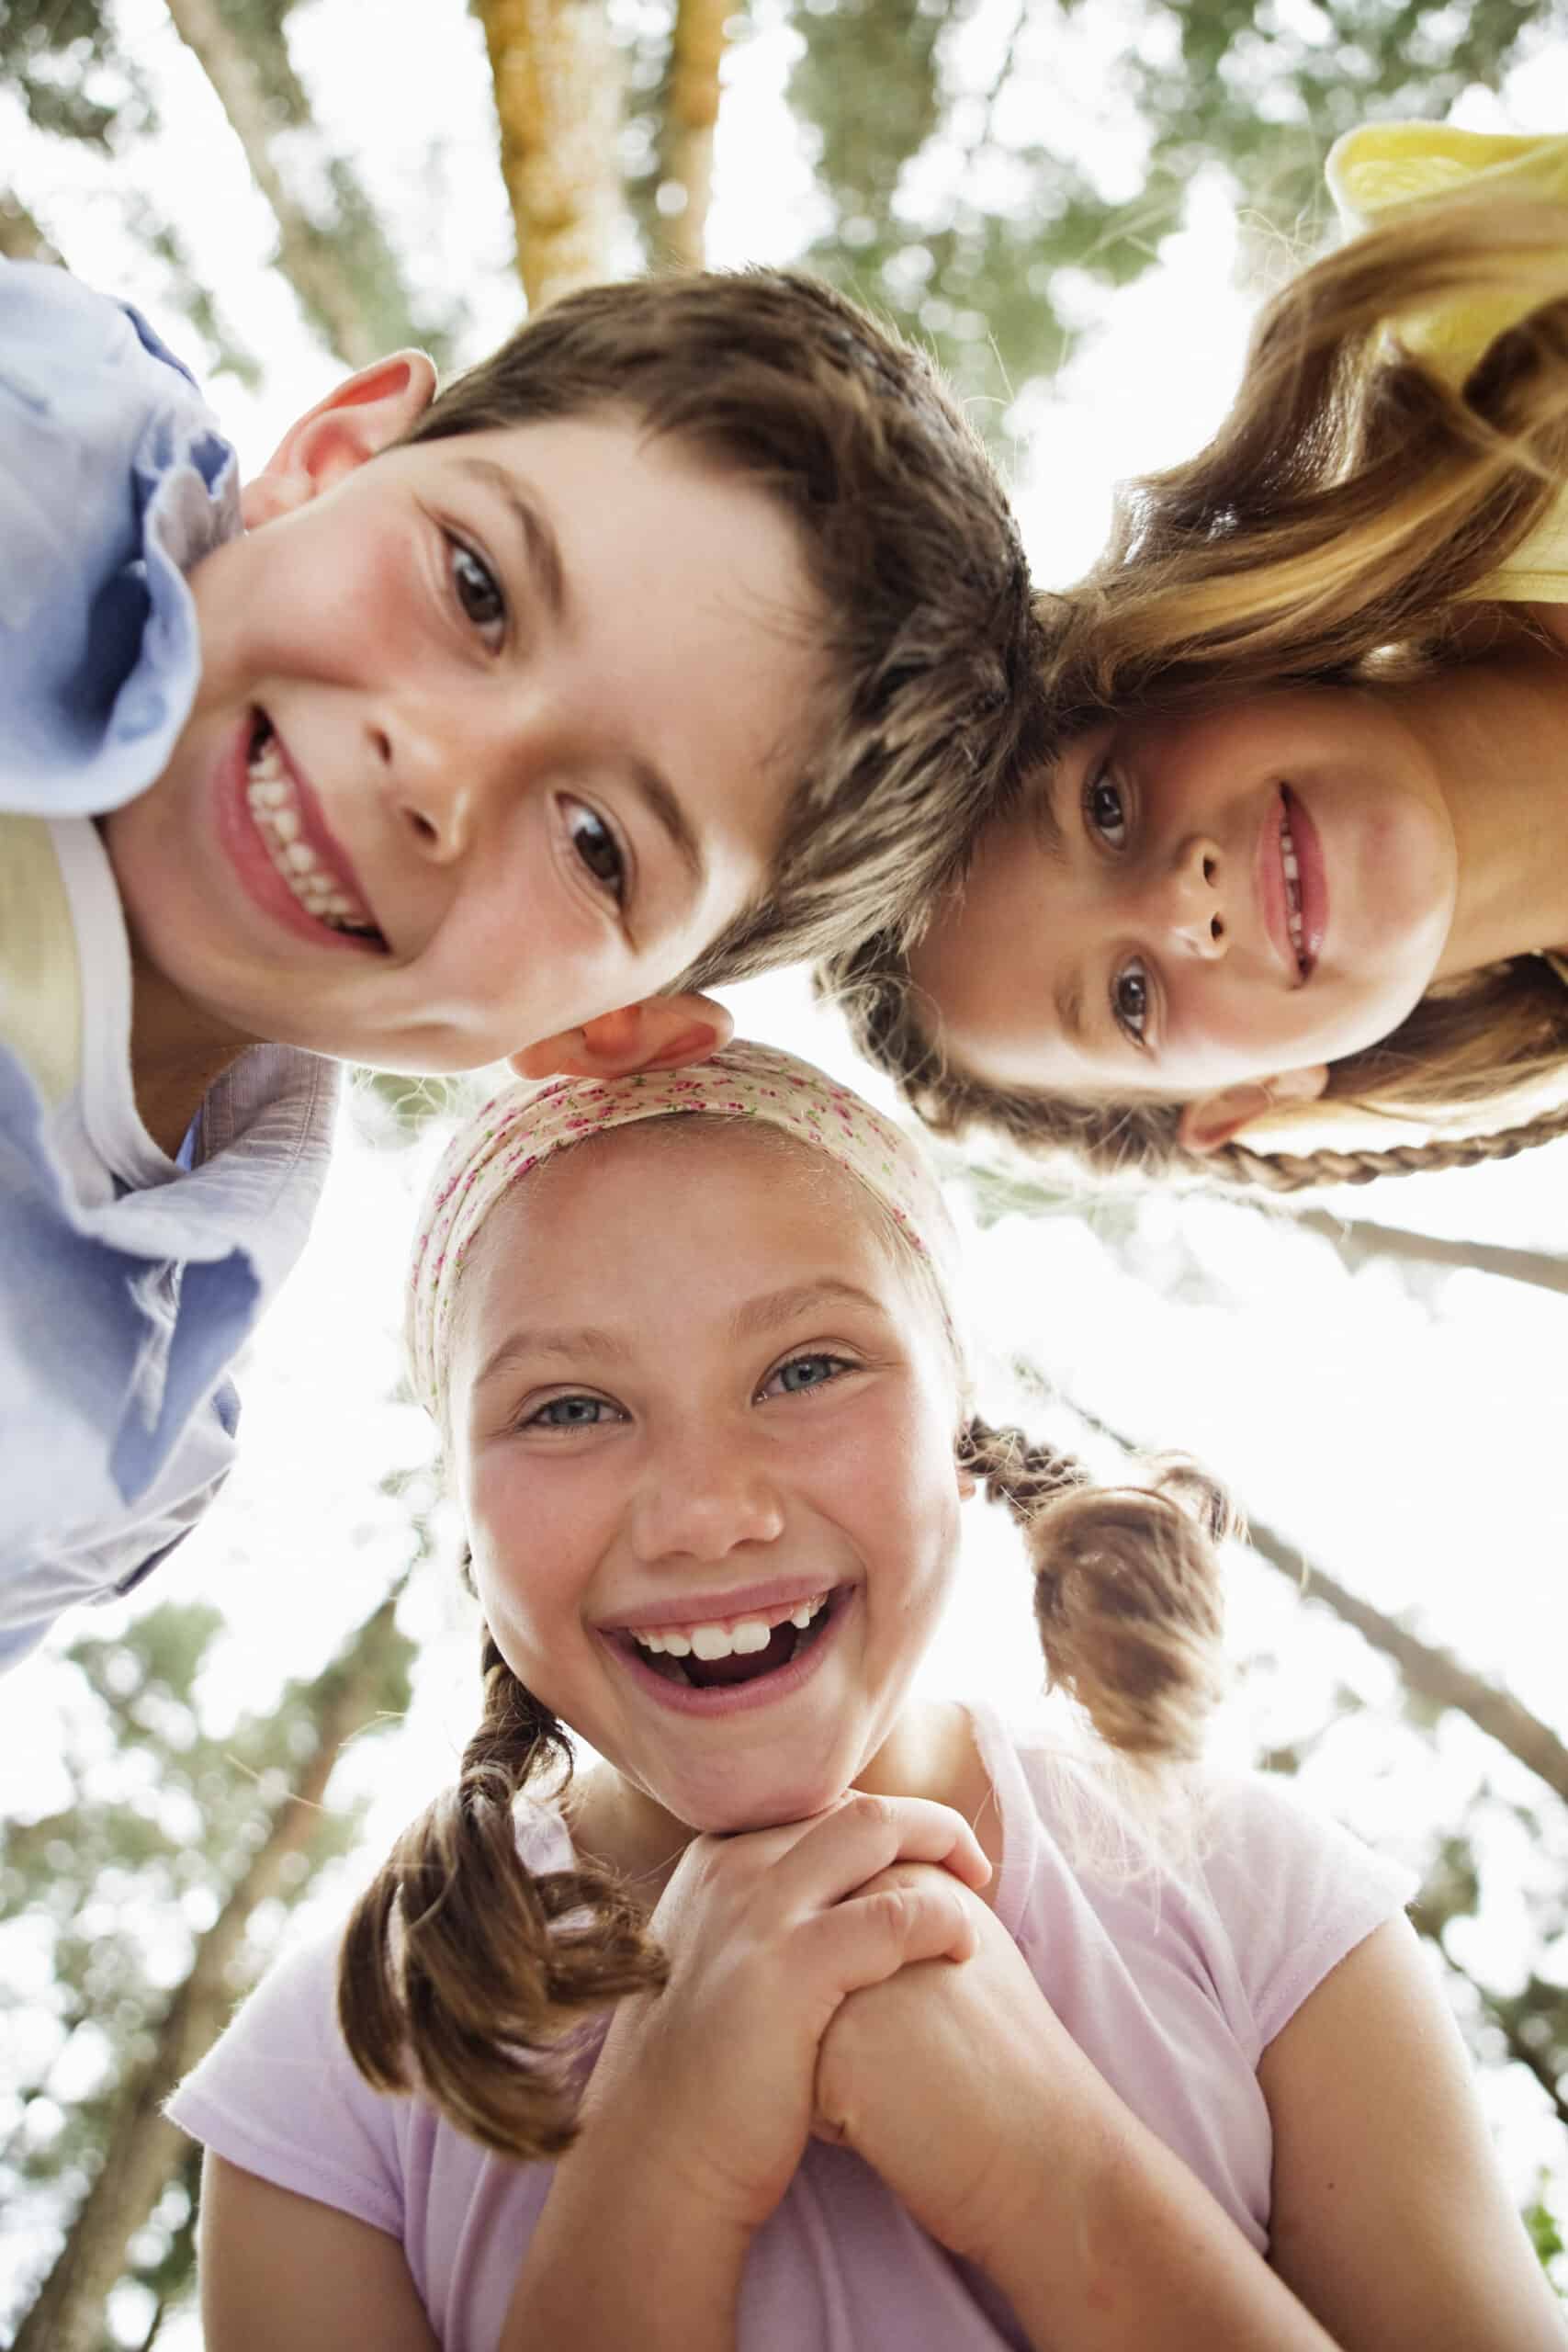 Drei lächelnde Kinder blicken von oben auf die Kamera, im Hintergrund sind die Bäume unscharf, und fangen einen freudigen, unbeschwerten Moment unter Freunden im Freien ein. © Fotografie Tomas Rodriguez